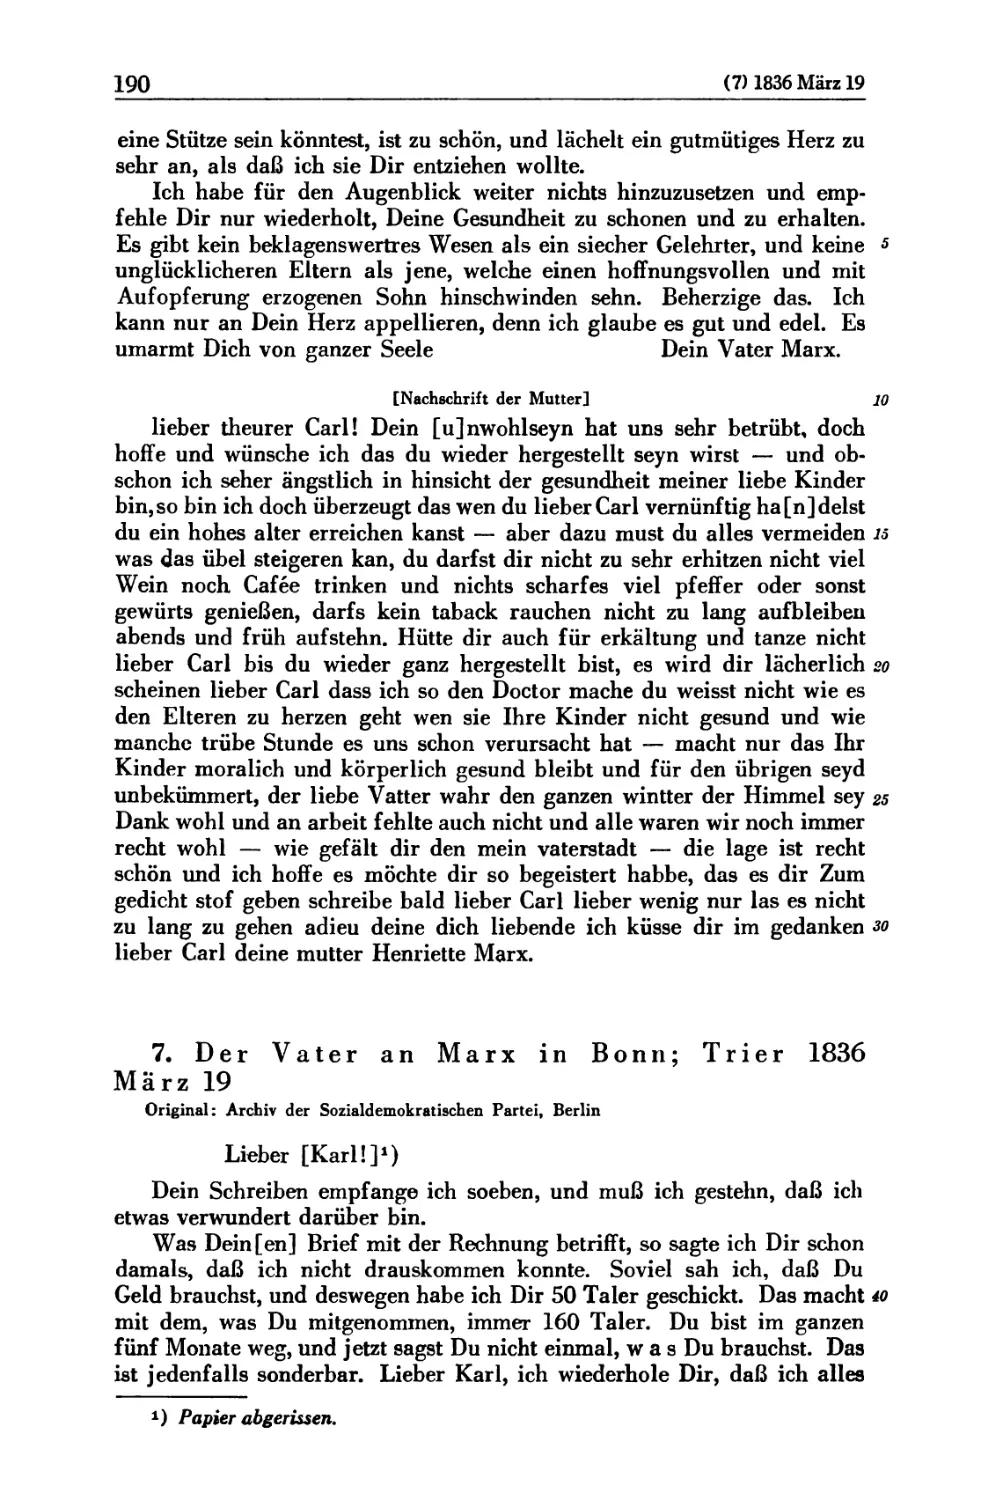 7. Der Vater an Marx in Bonn; Trier 1836 März 19